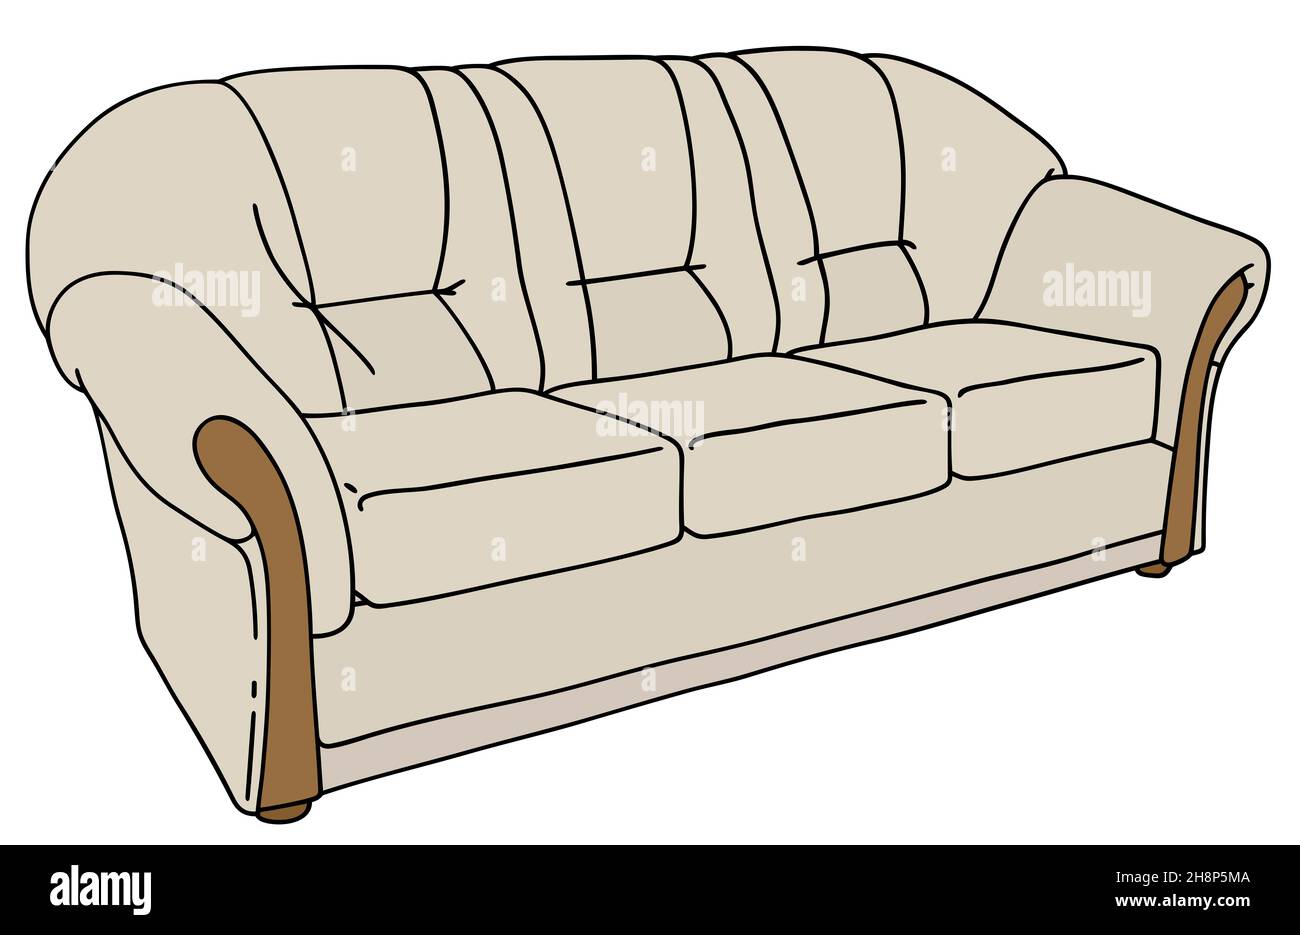 Dibujo a mano de un cómodo sofá de color crema Fotografía de stock - Alamy